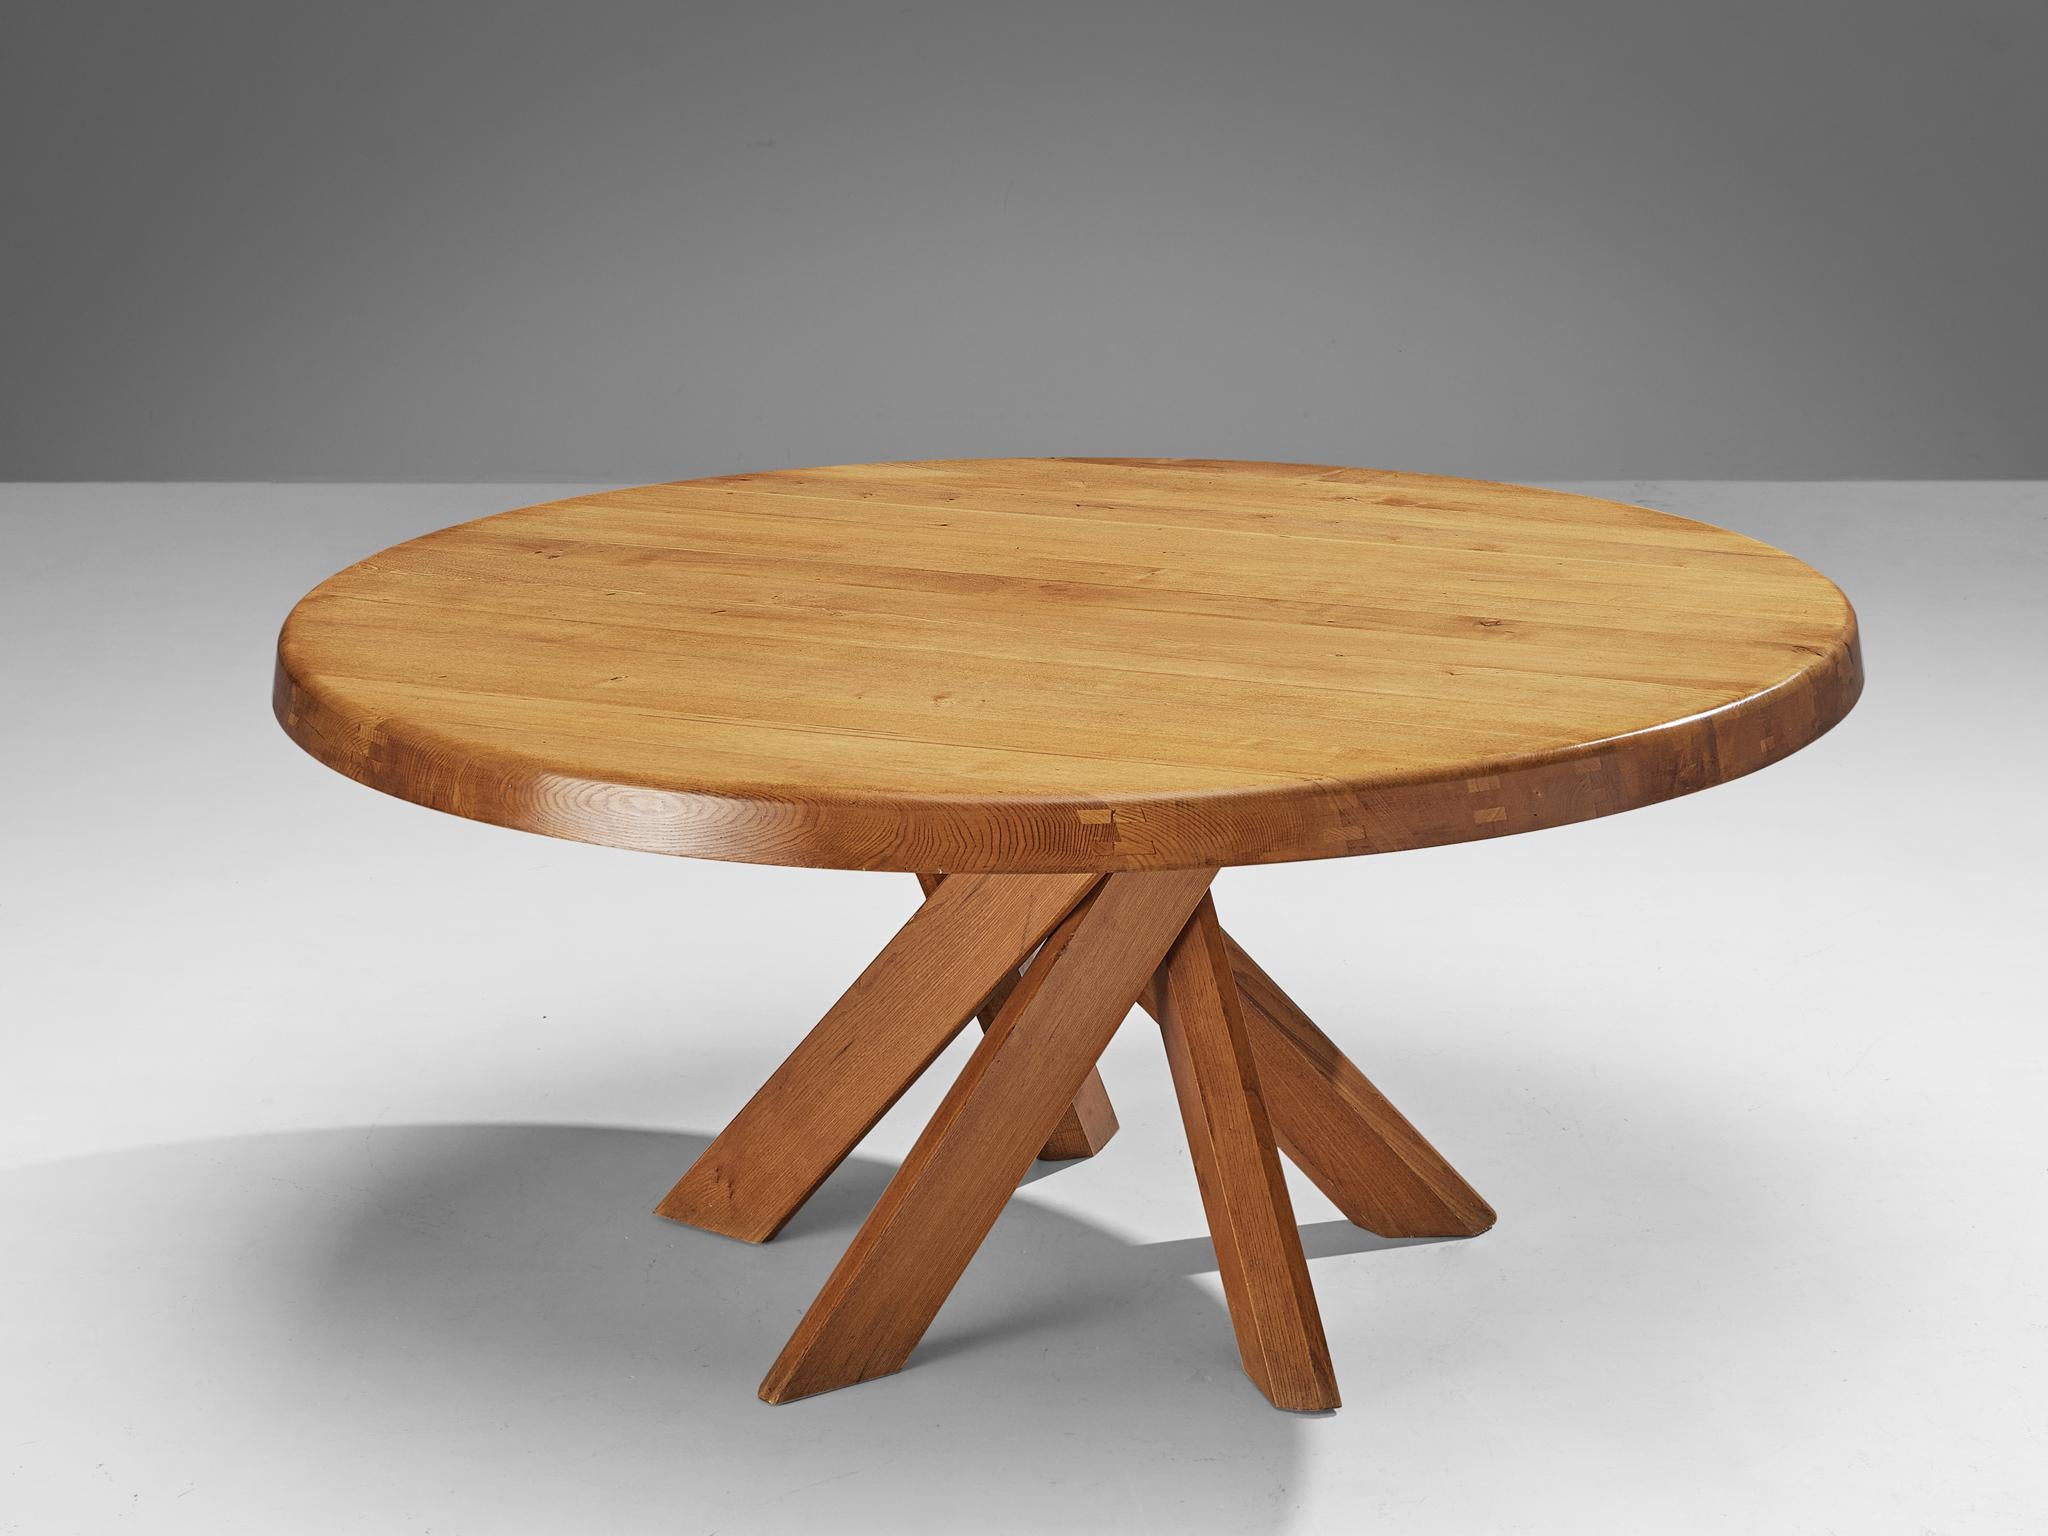 Pierre CIRCA, Table de salle à manger 'Sfax', modèle 'T21E', orme, France, circa 1973

Cette table est l'une des premières éditions conçues par Pierre Chapo, connu pour son utilisation caractéristique du bois d'orme massif et son engagement en